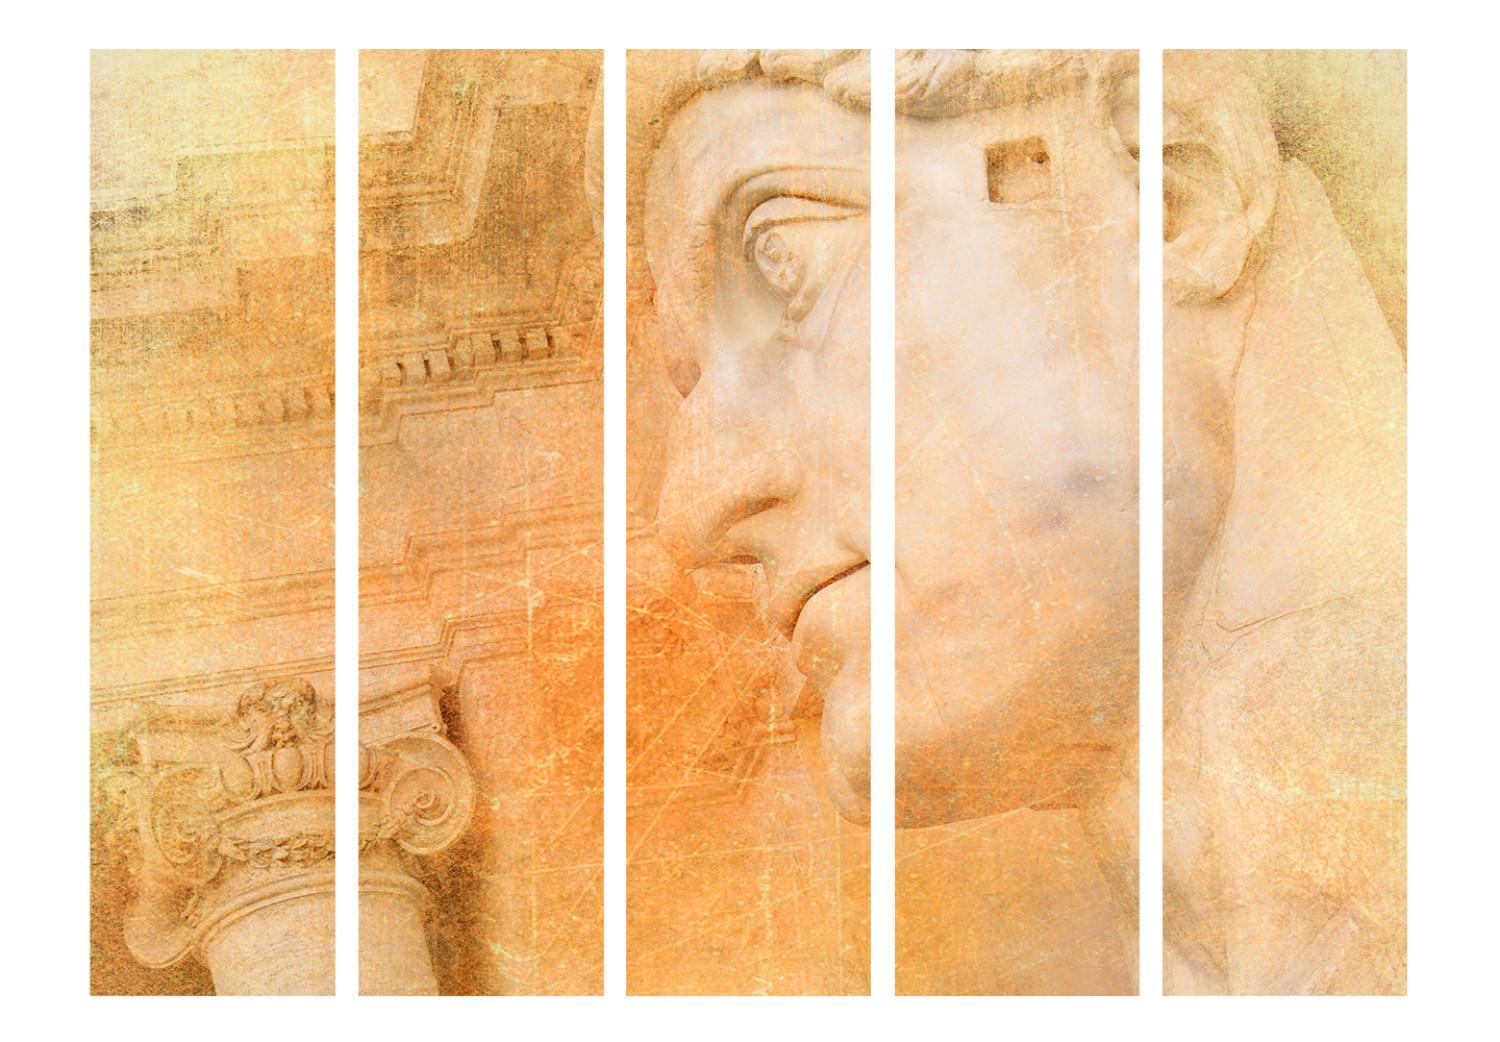 Biombo original Dios griego II: arquitectura y escultura en un tema retro naranja